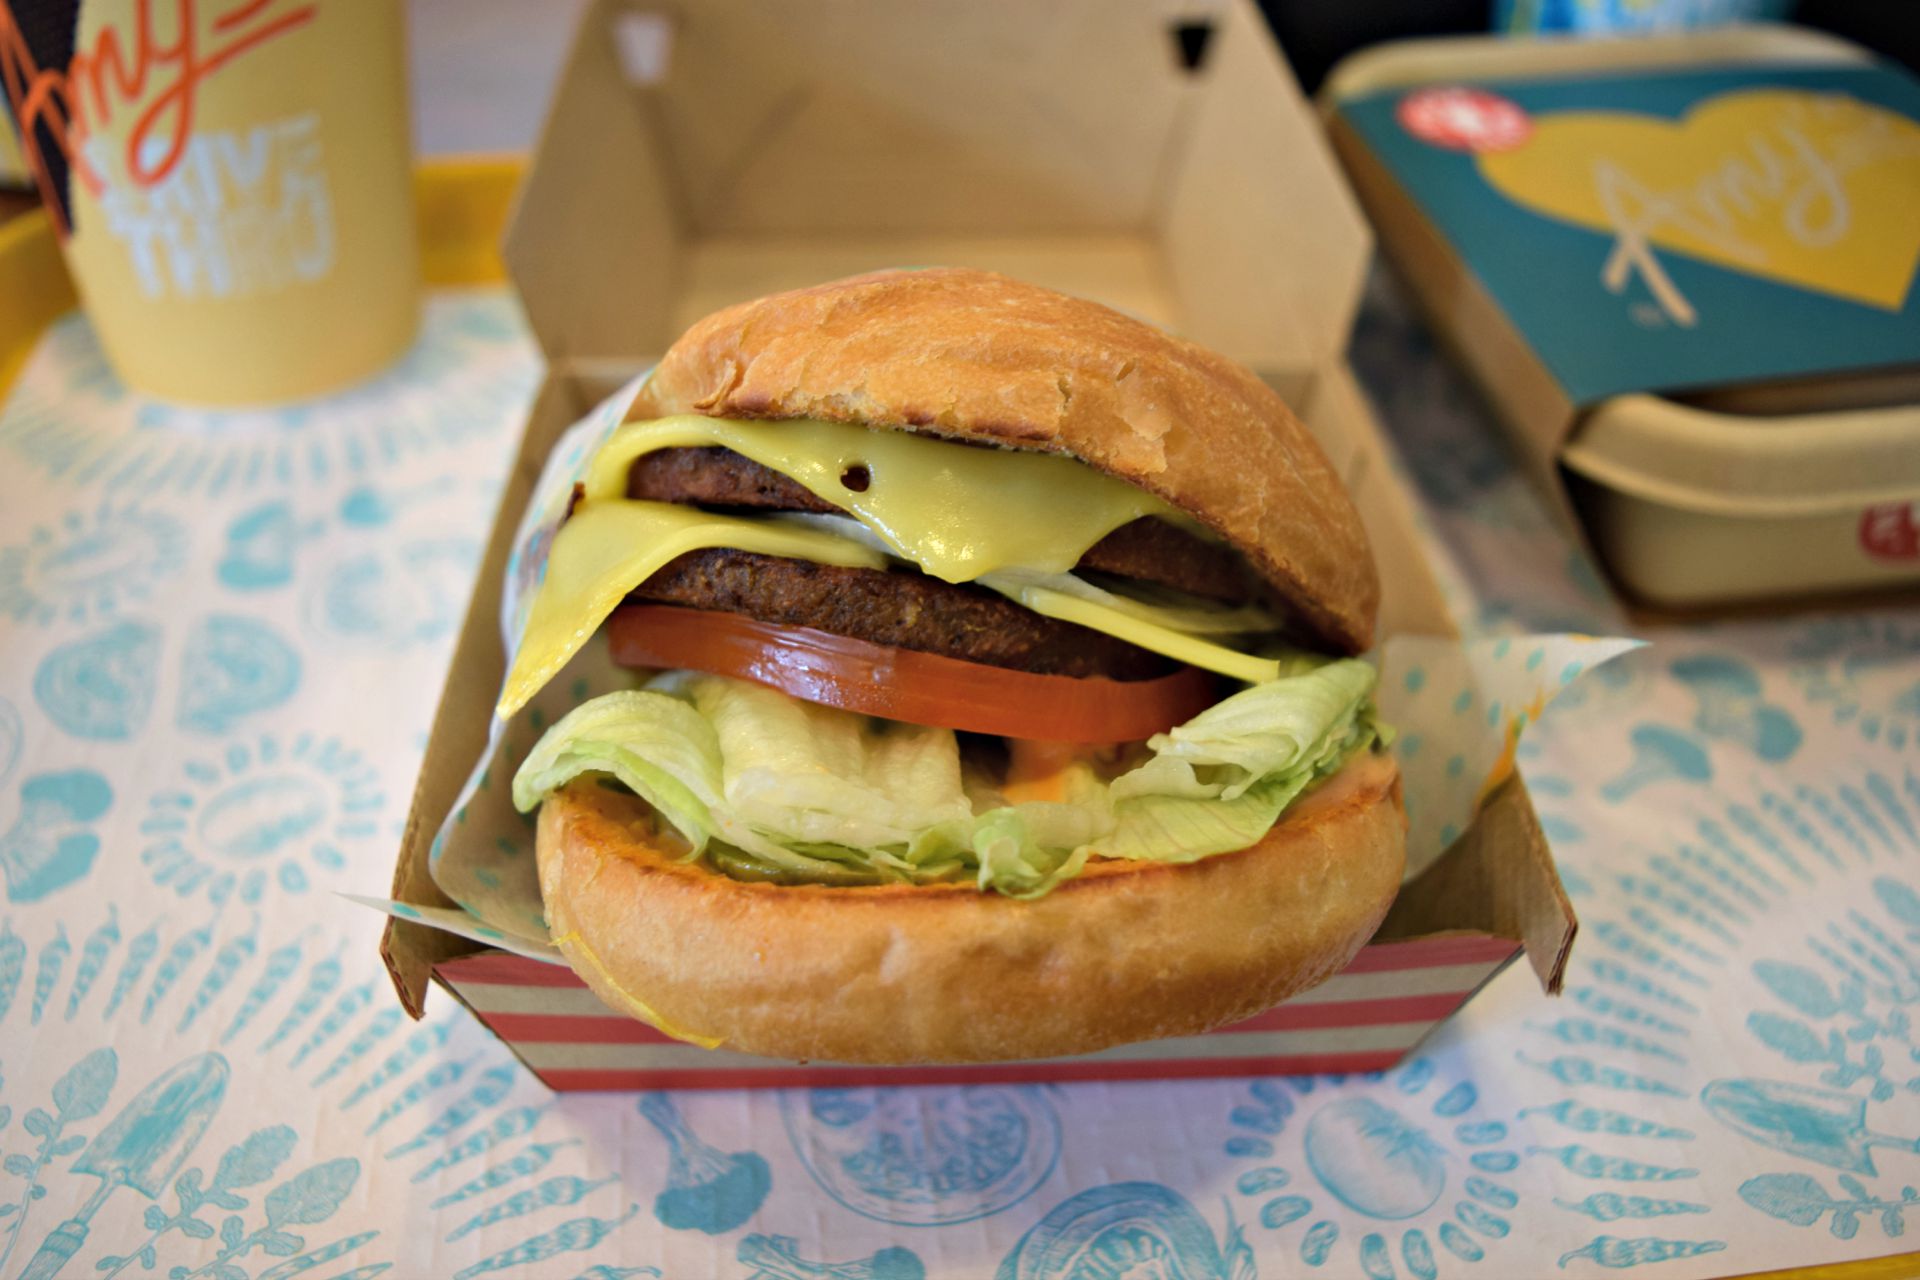 The vegan "Amy" burger.